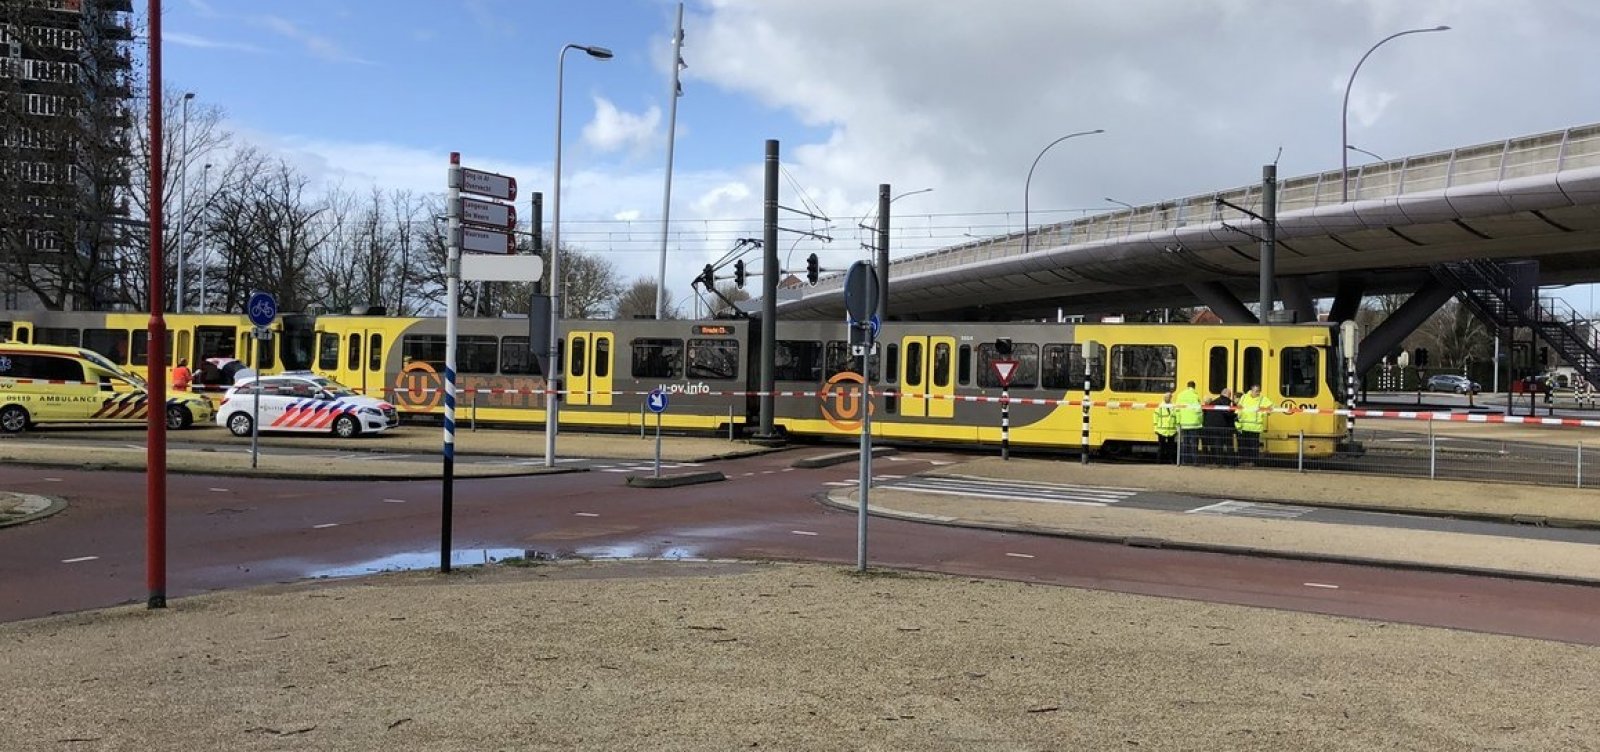 Homem abre fogo contra passageiros em bonde na Holanda